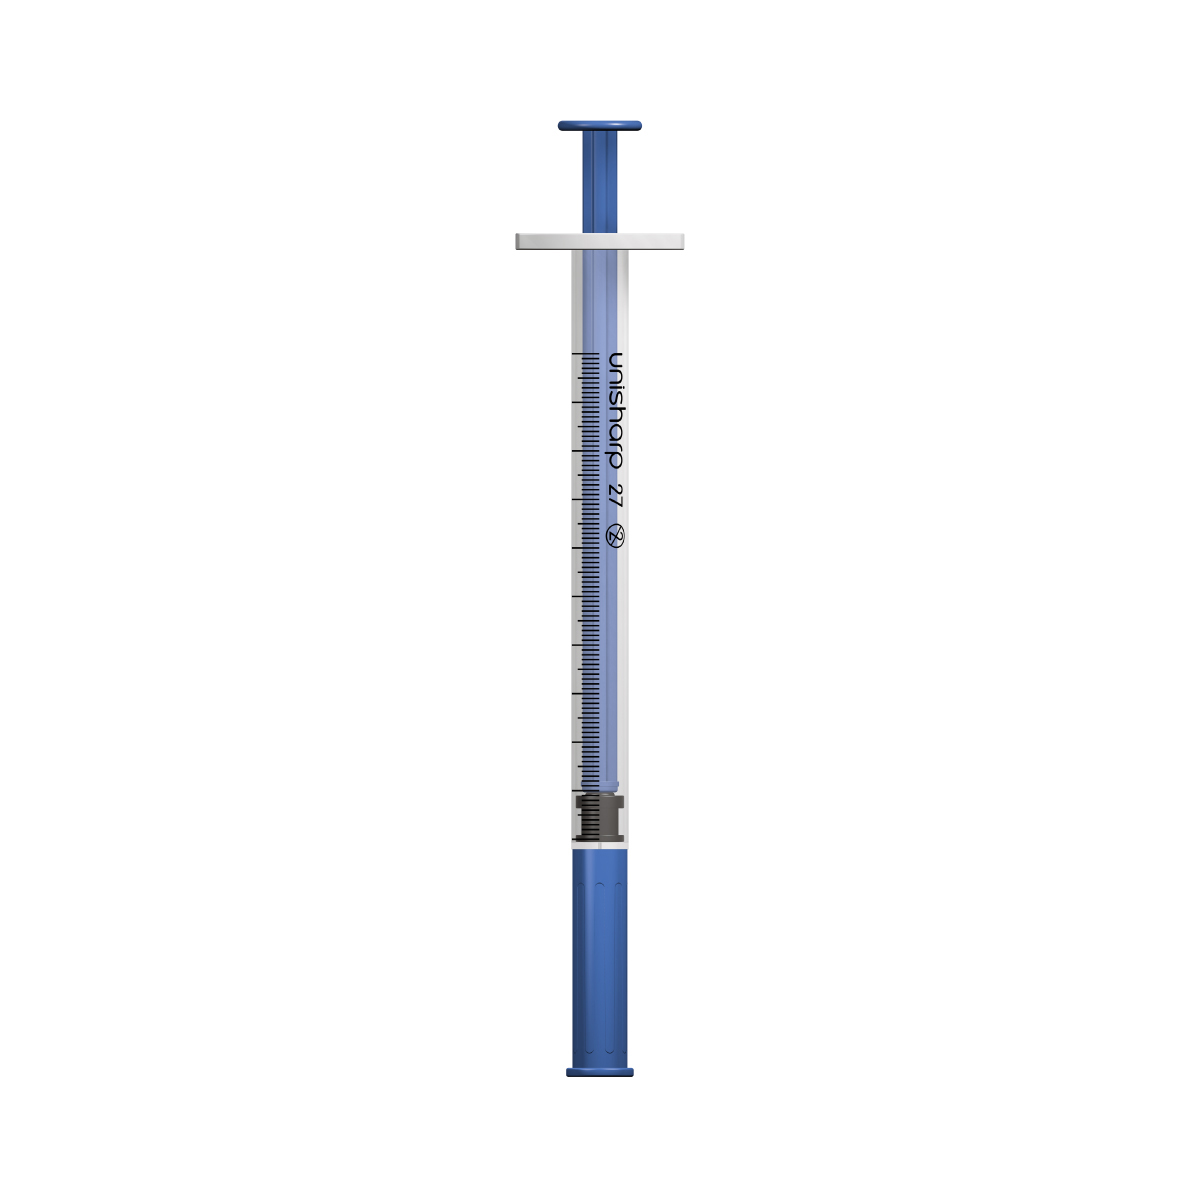 Unisharp 1ml 27G fixed needle syringe: Blue